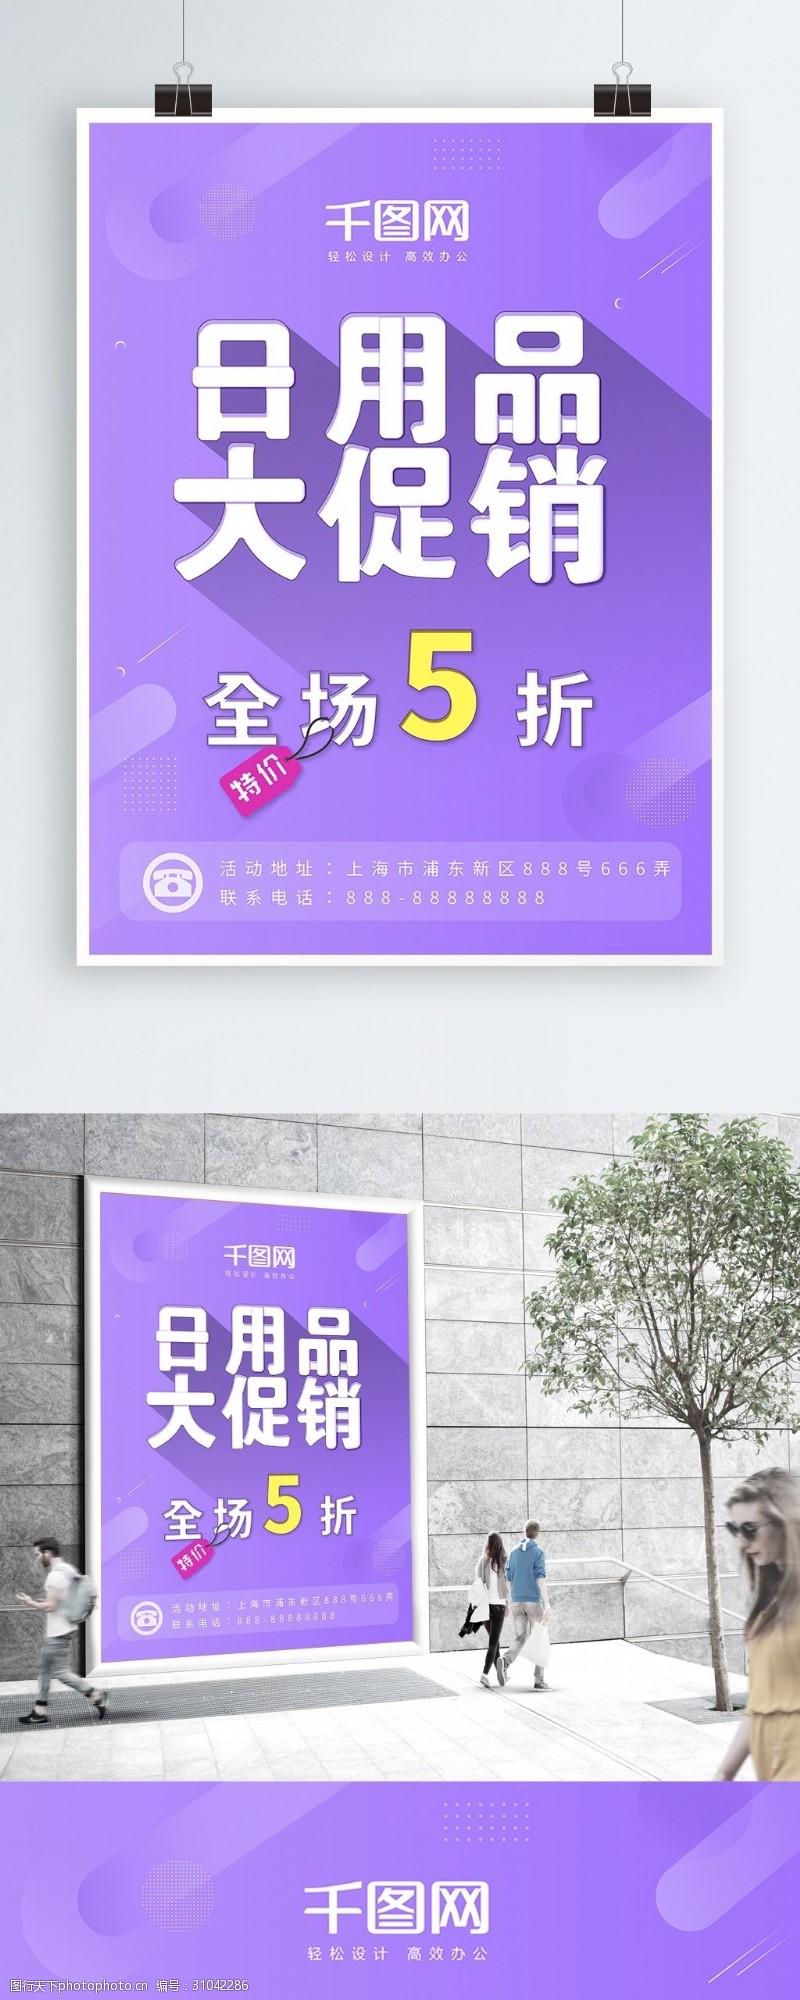 紫色几何简约日用品商店超市打折促销海报